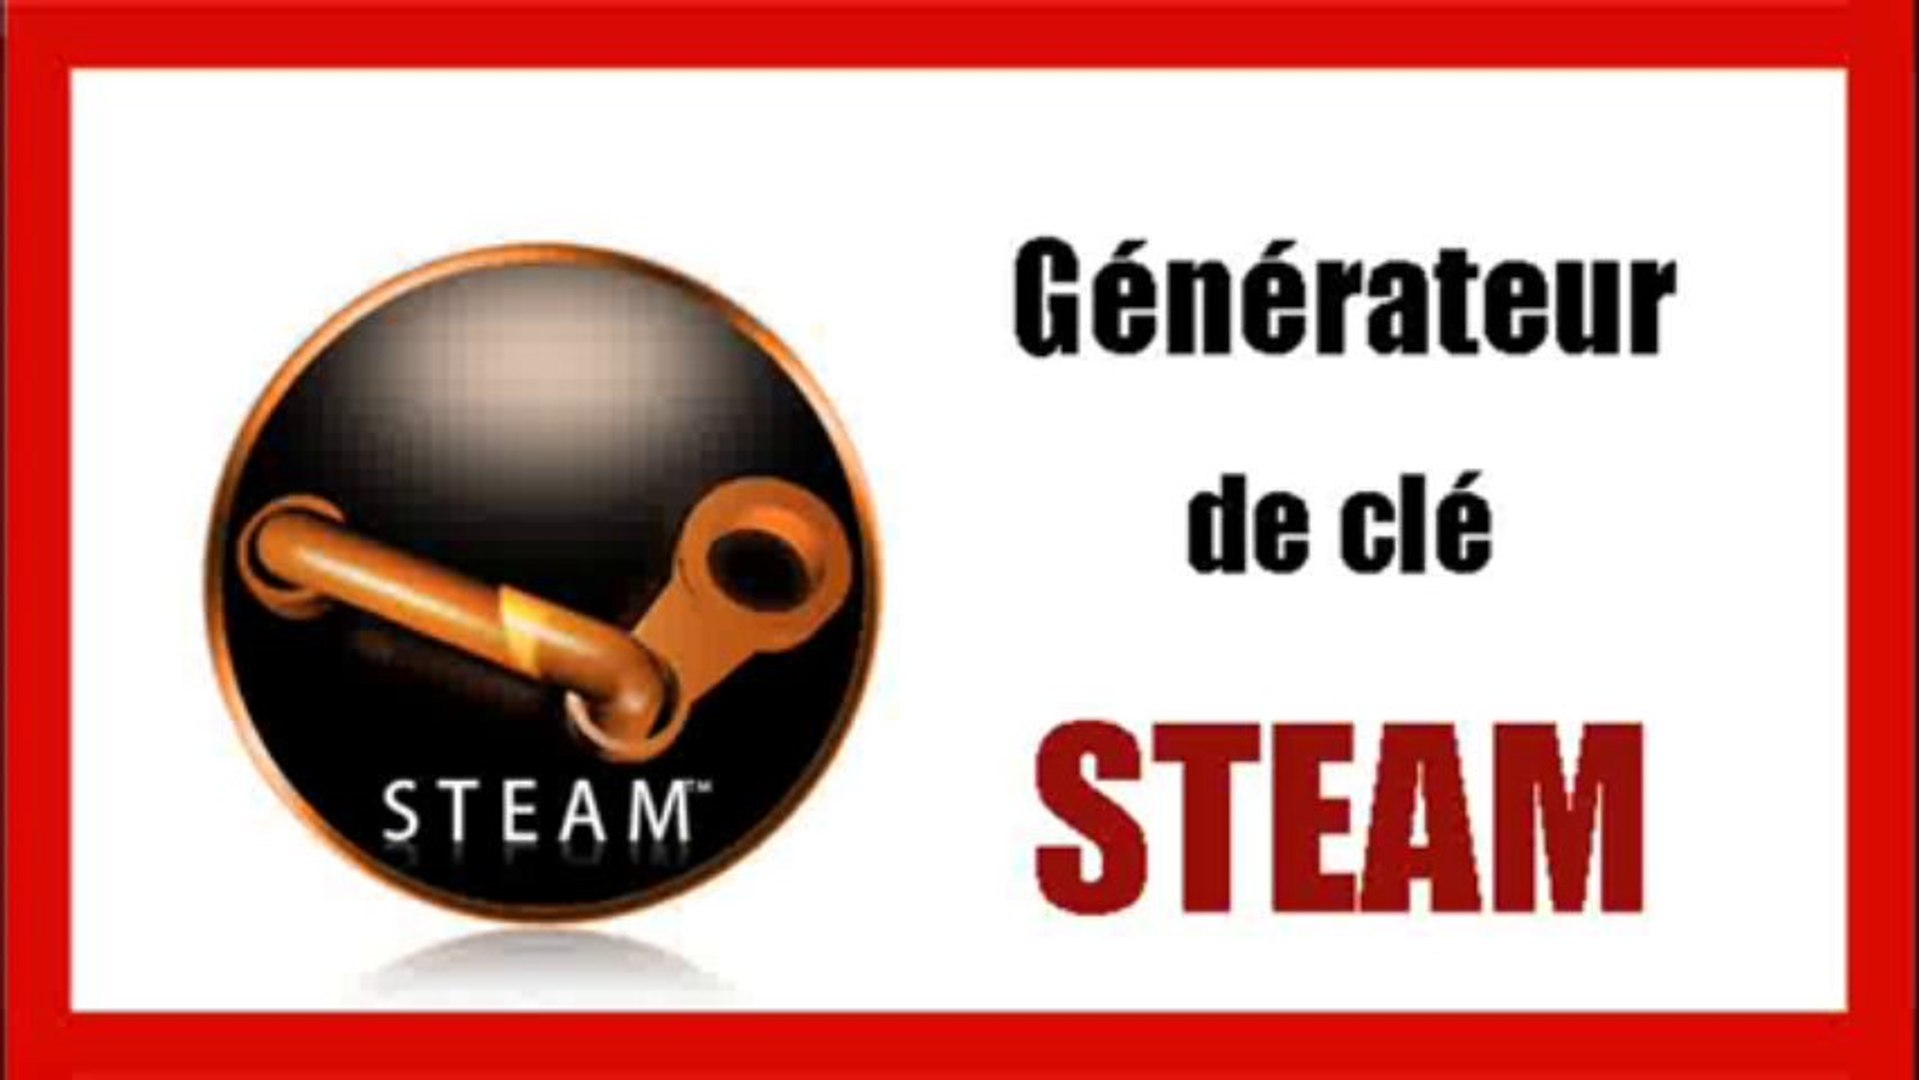 Générateur de clé Steam v3.4 - Comment Avoir Les Jeux Steam Gratuit 2013 -  Dailymotion Video